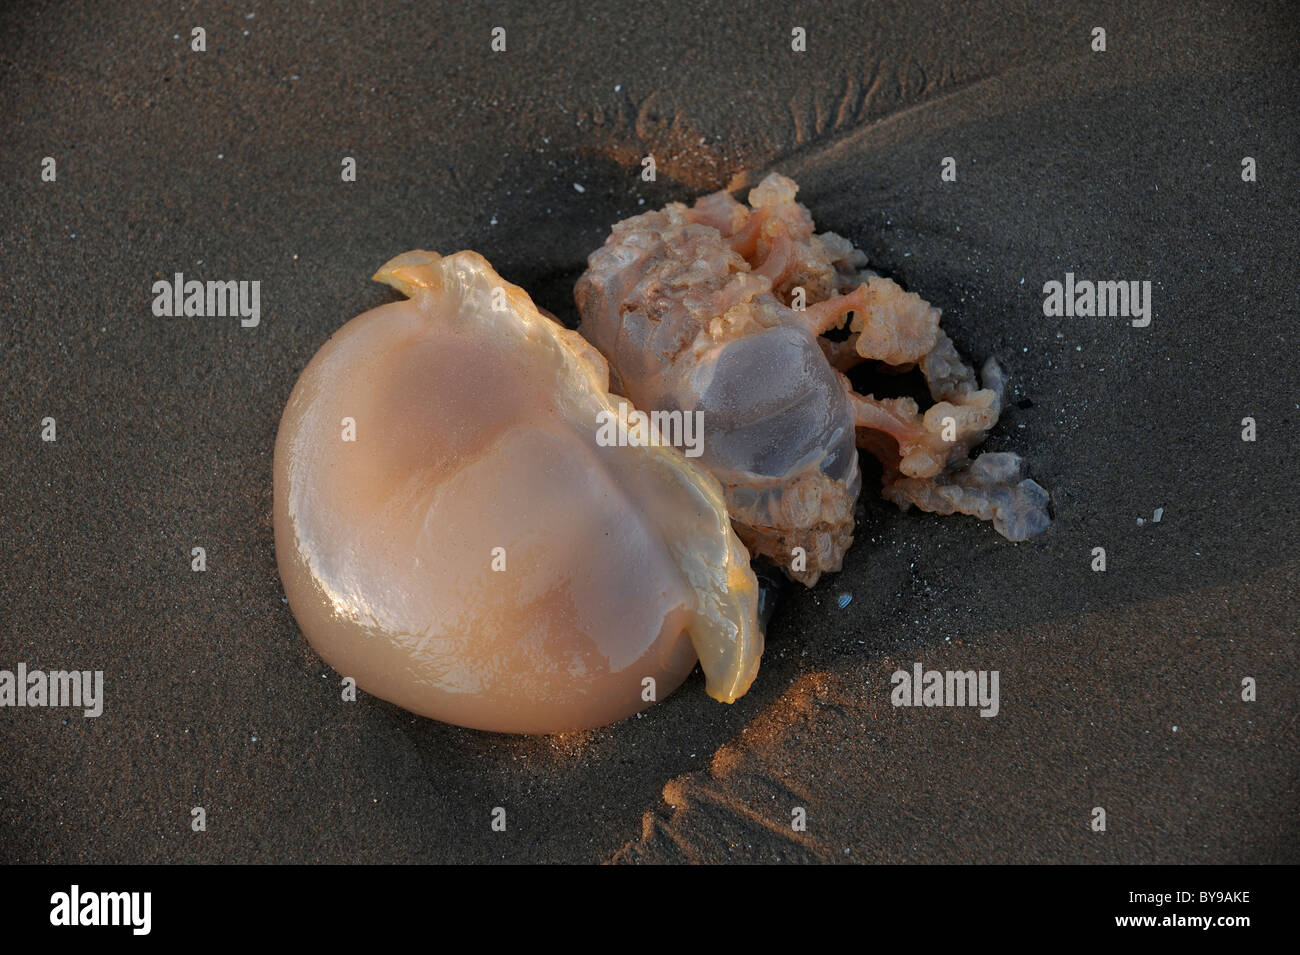 Washed up jellyfish Stock Photo